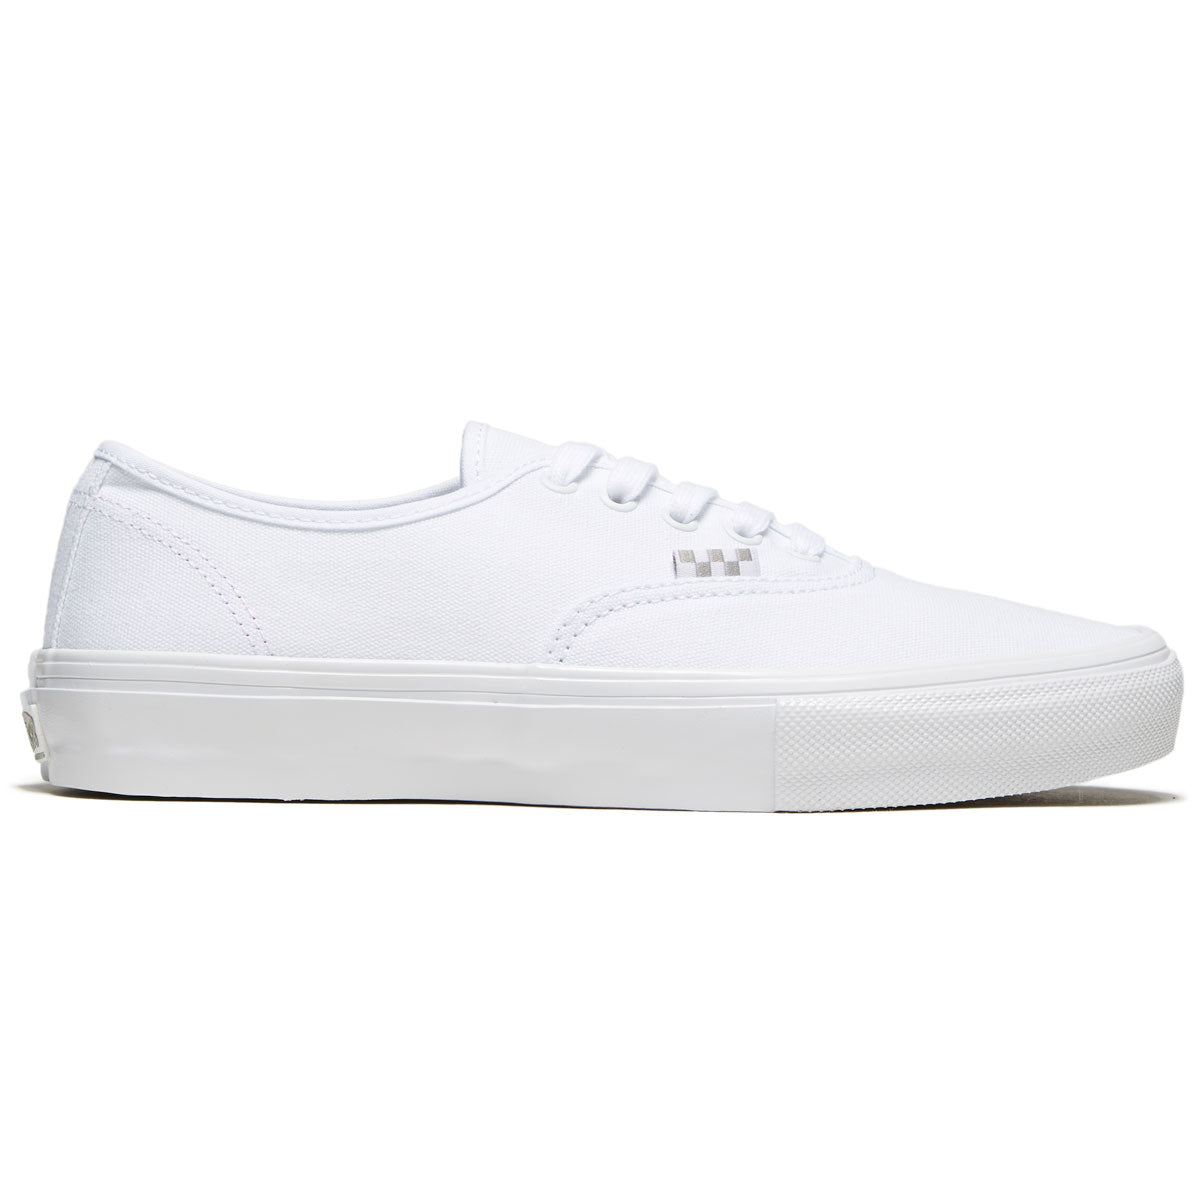 Vans Skate Authentic Shoes - True White image 1